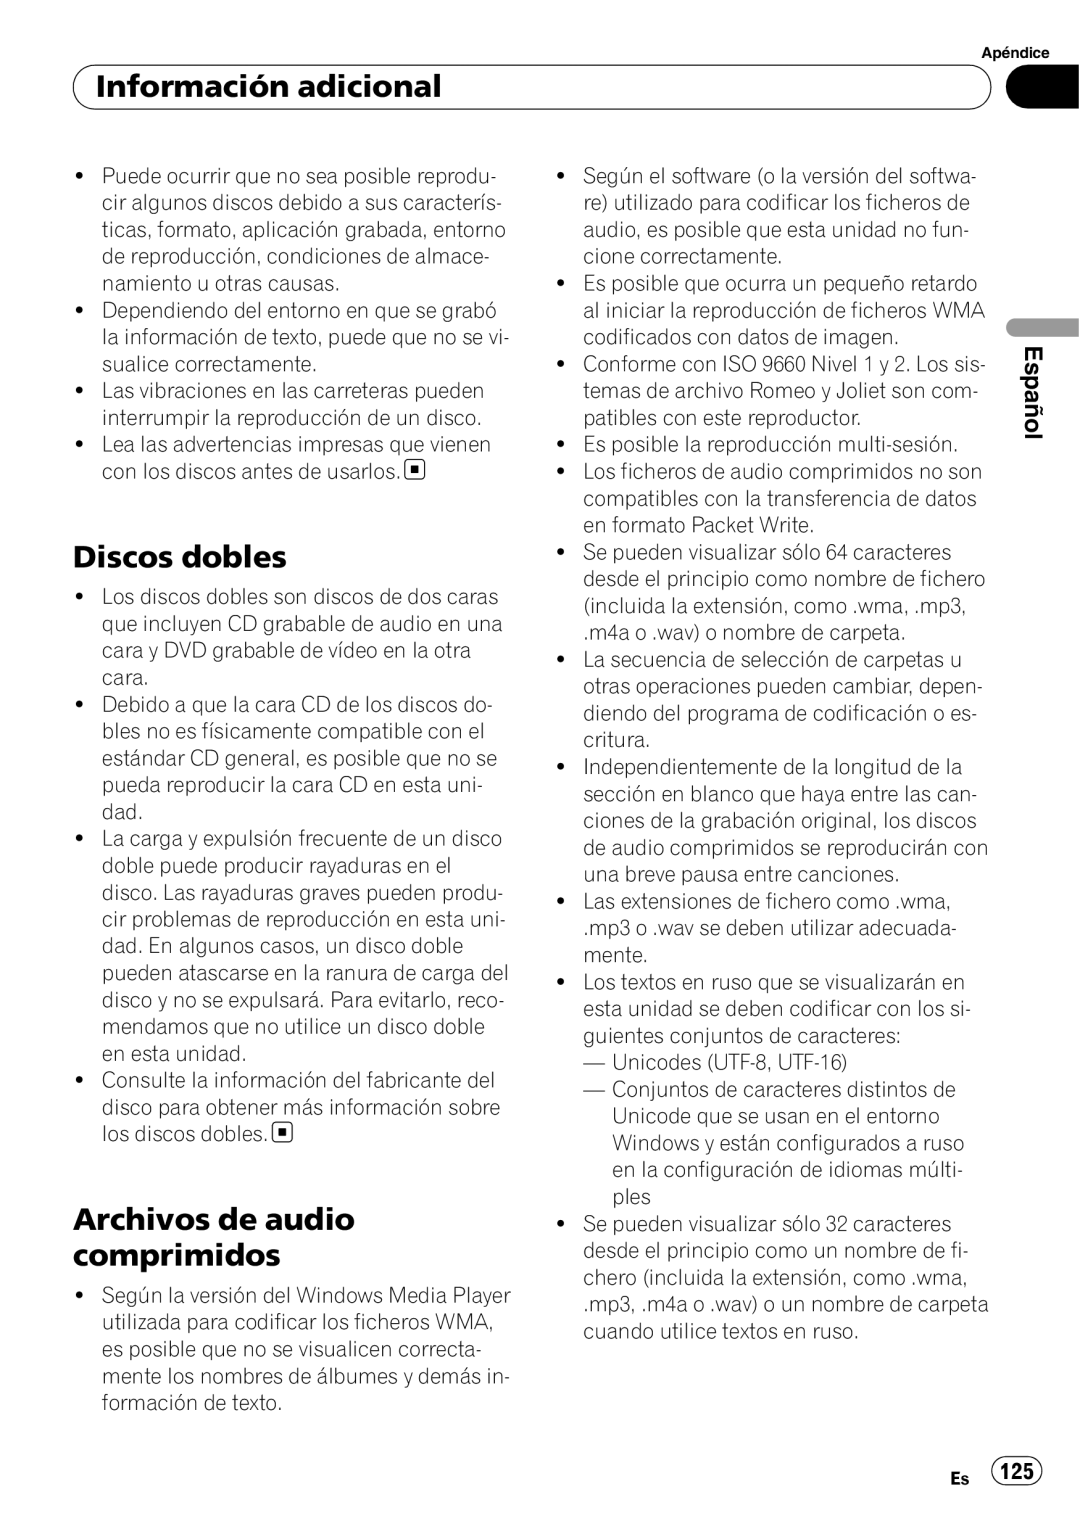 Pioneer DEH-P65BT operation manual Discos dobles, Archivos de audio comprimidos, Información adicional, Español 